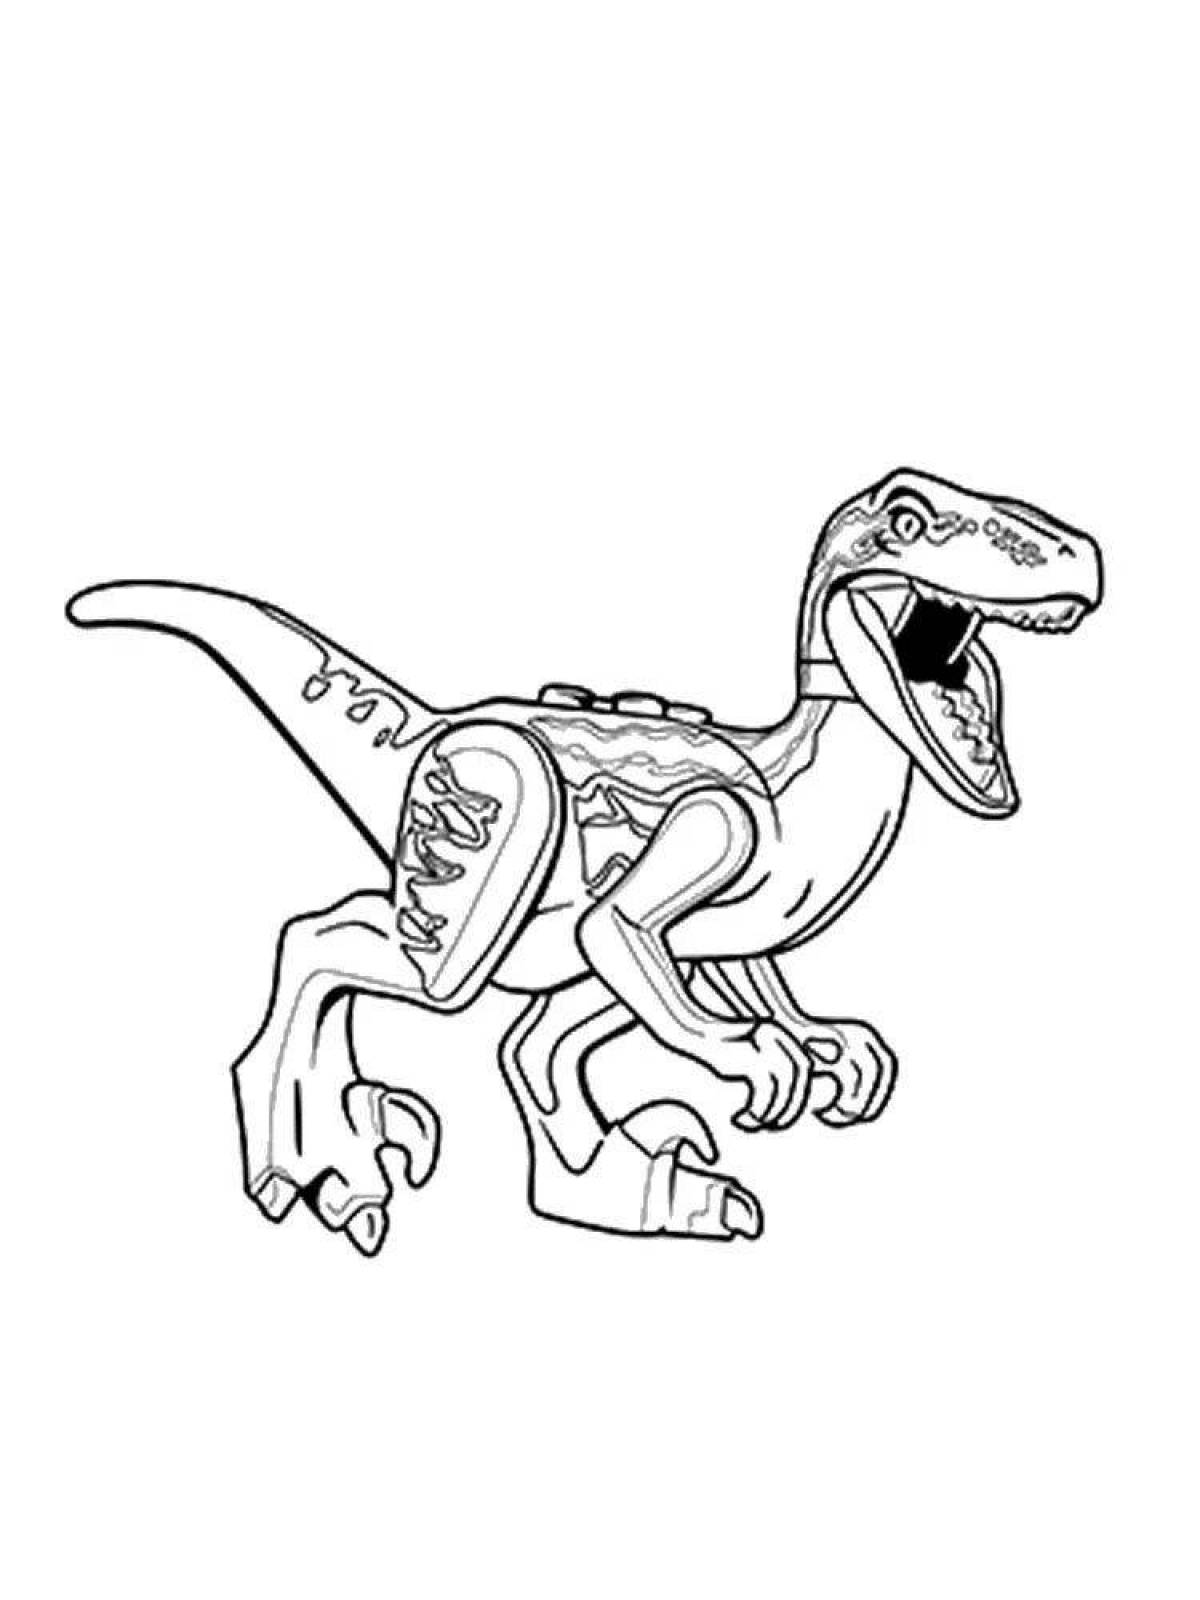 Fun coloring lego dinosaurs